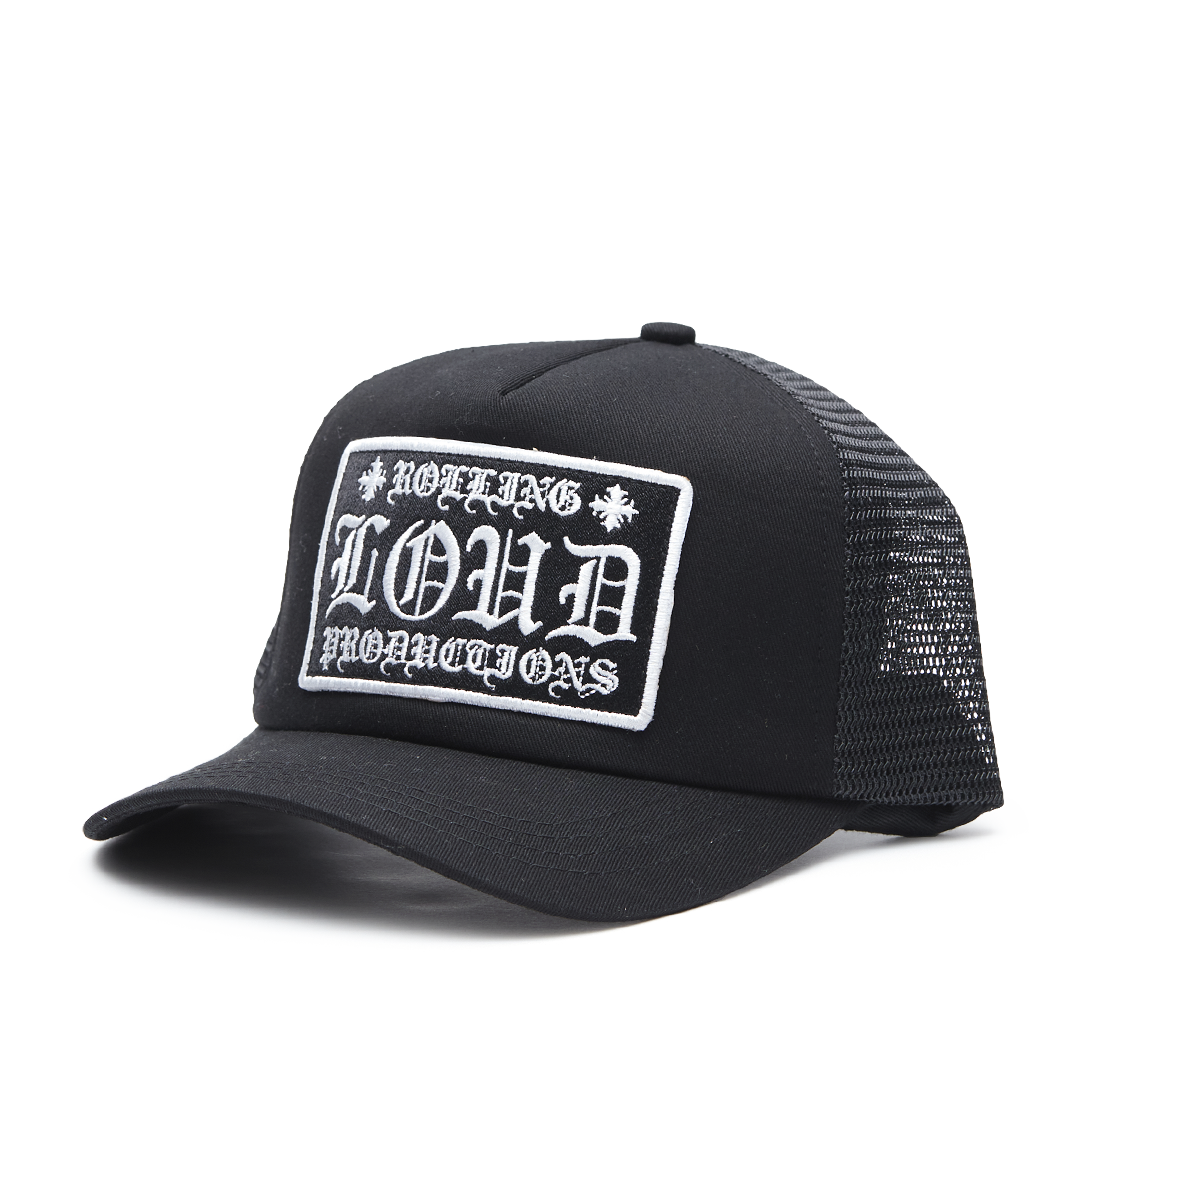 Loud Hearts Black Trucker Hat